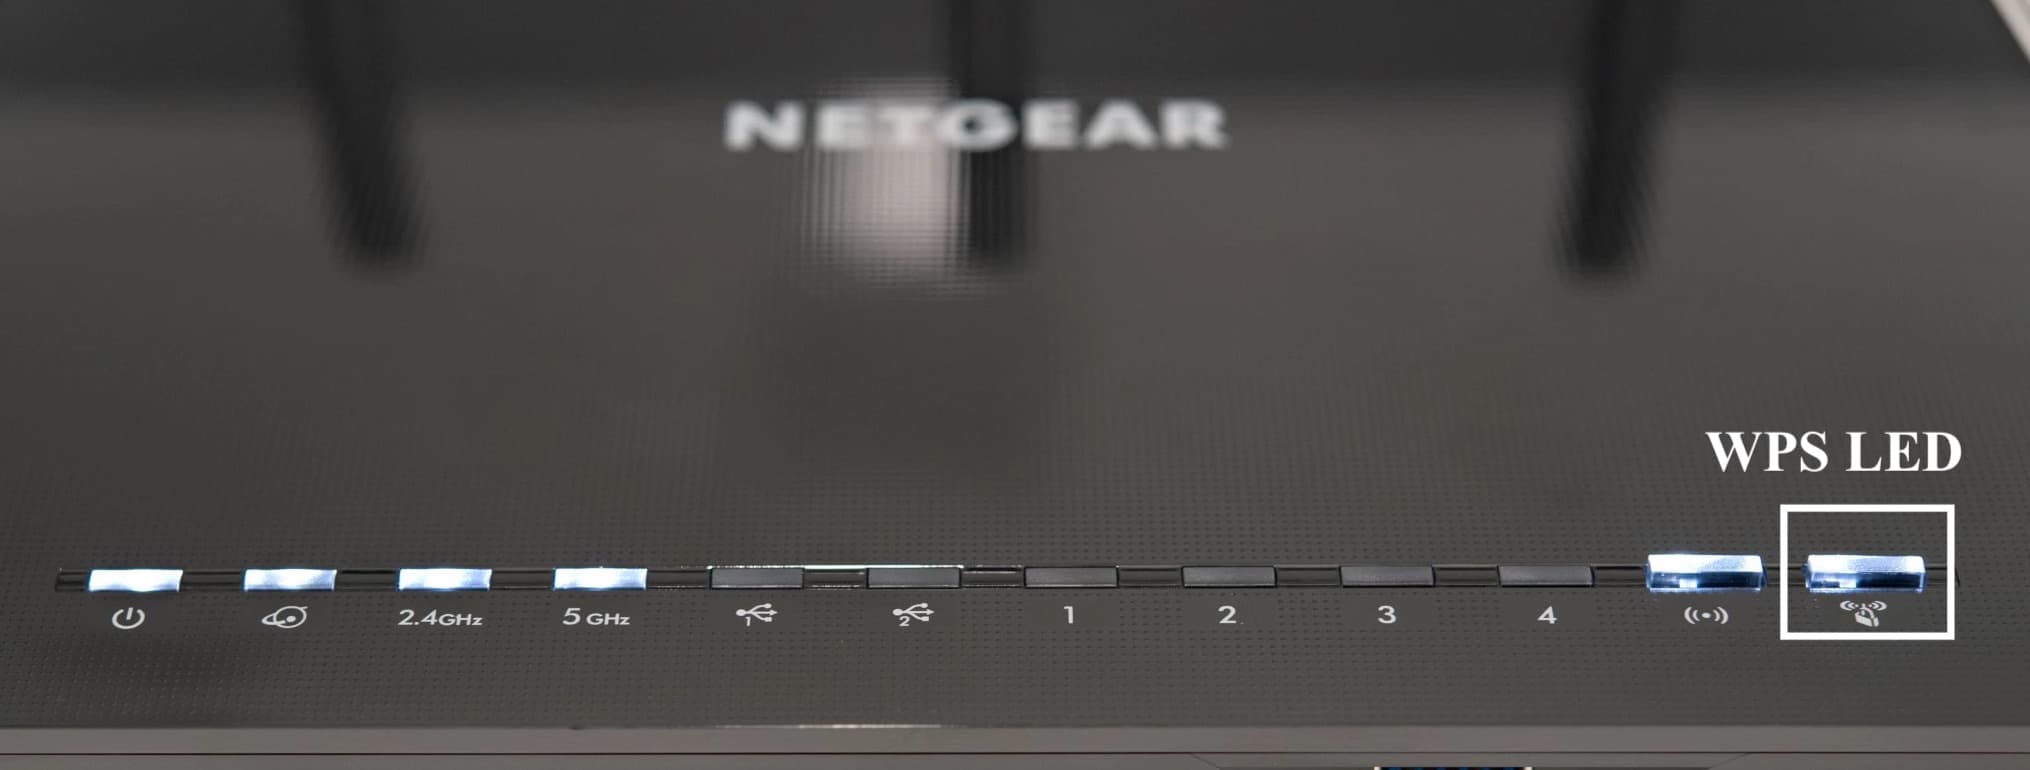 WPS LED on Netgear Router